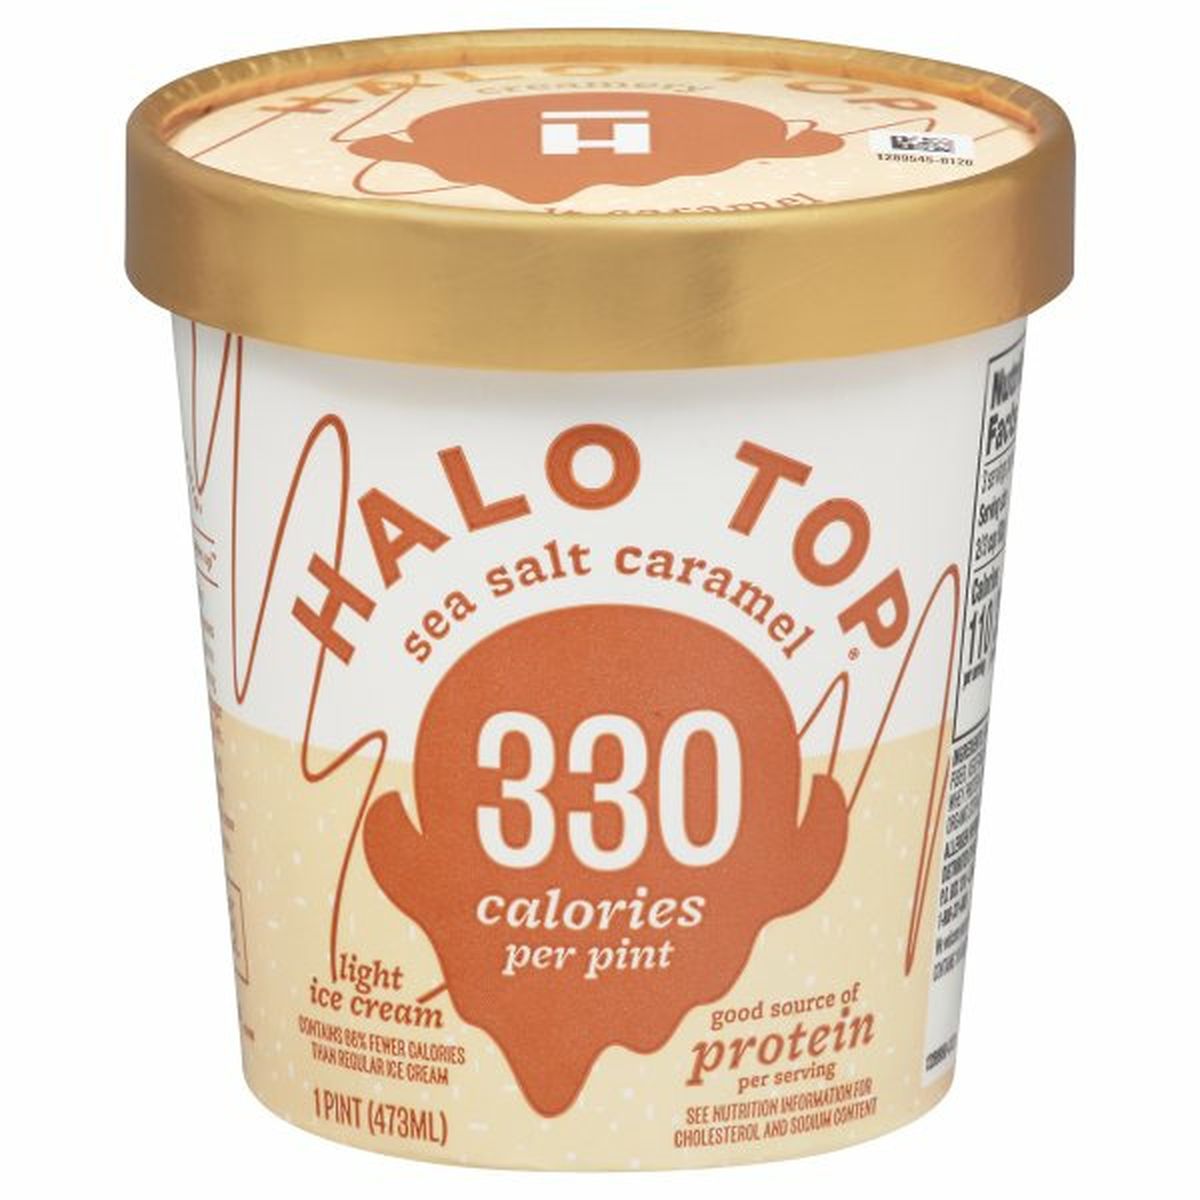 Calories in Halo Top Ice Cream, Light, Sea Salt Caramel